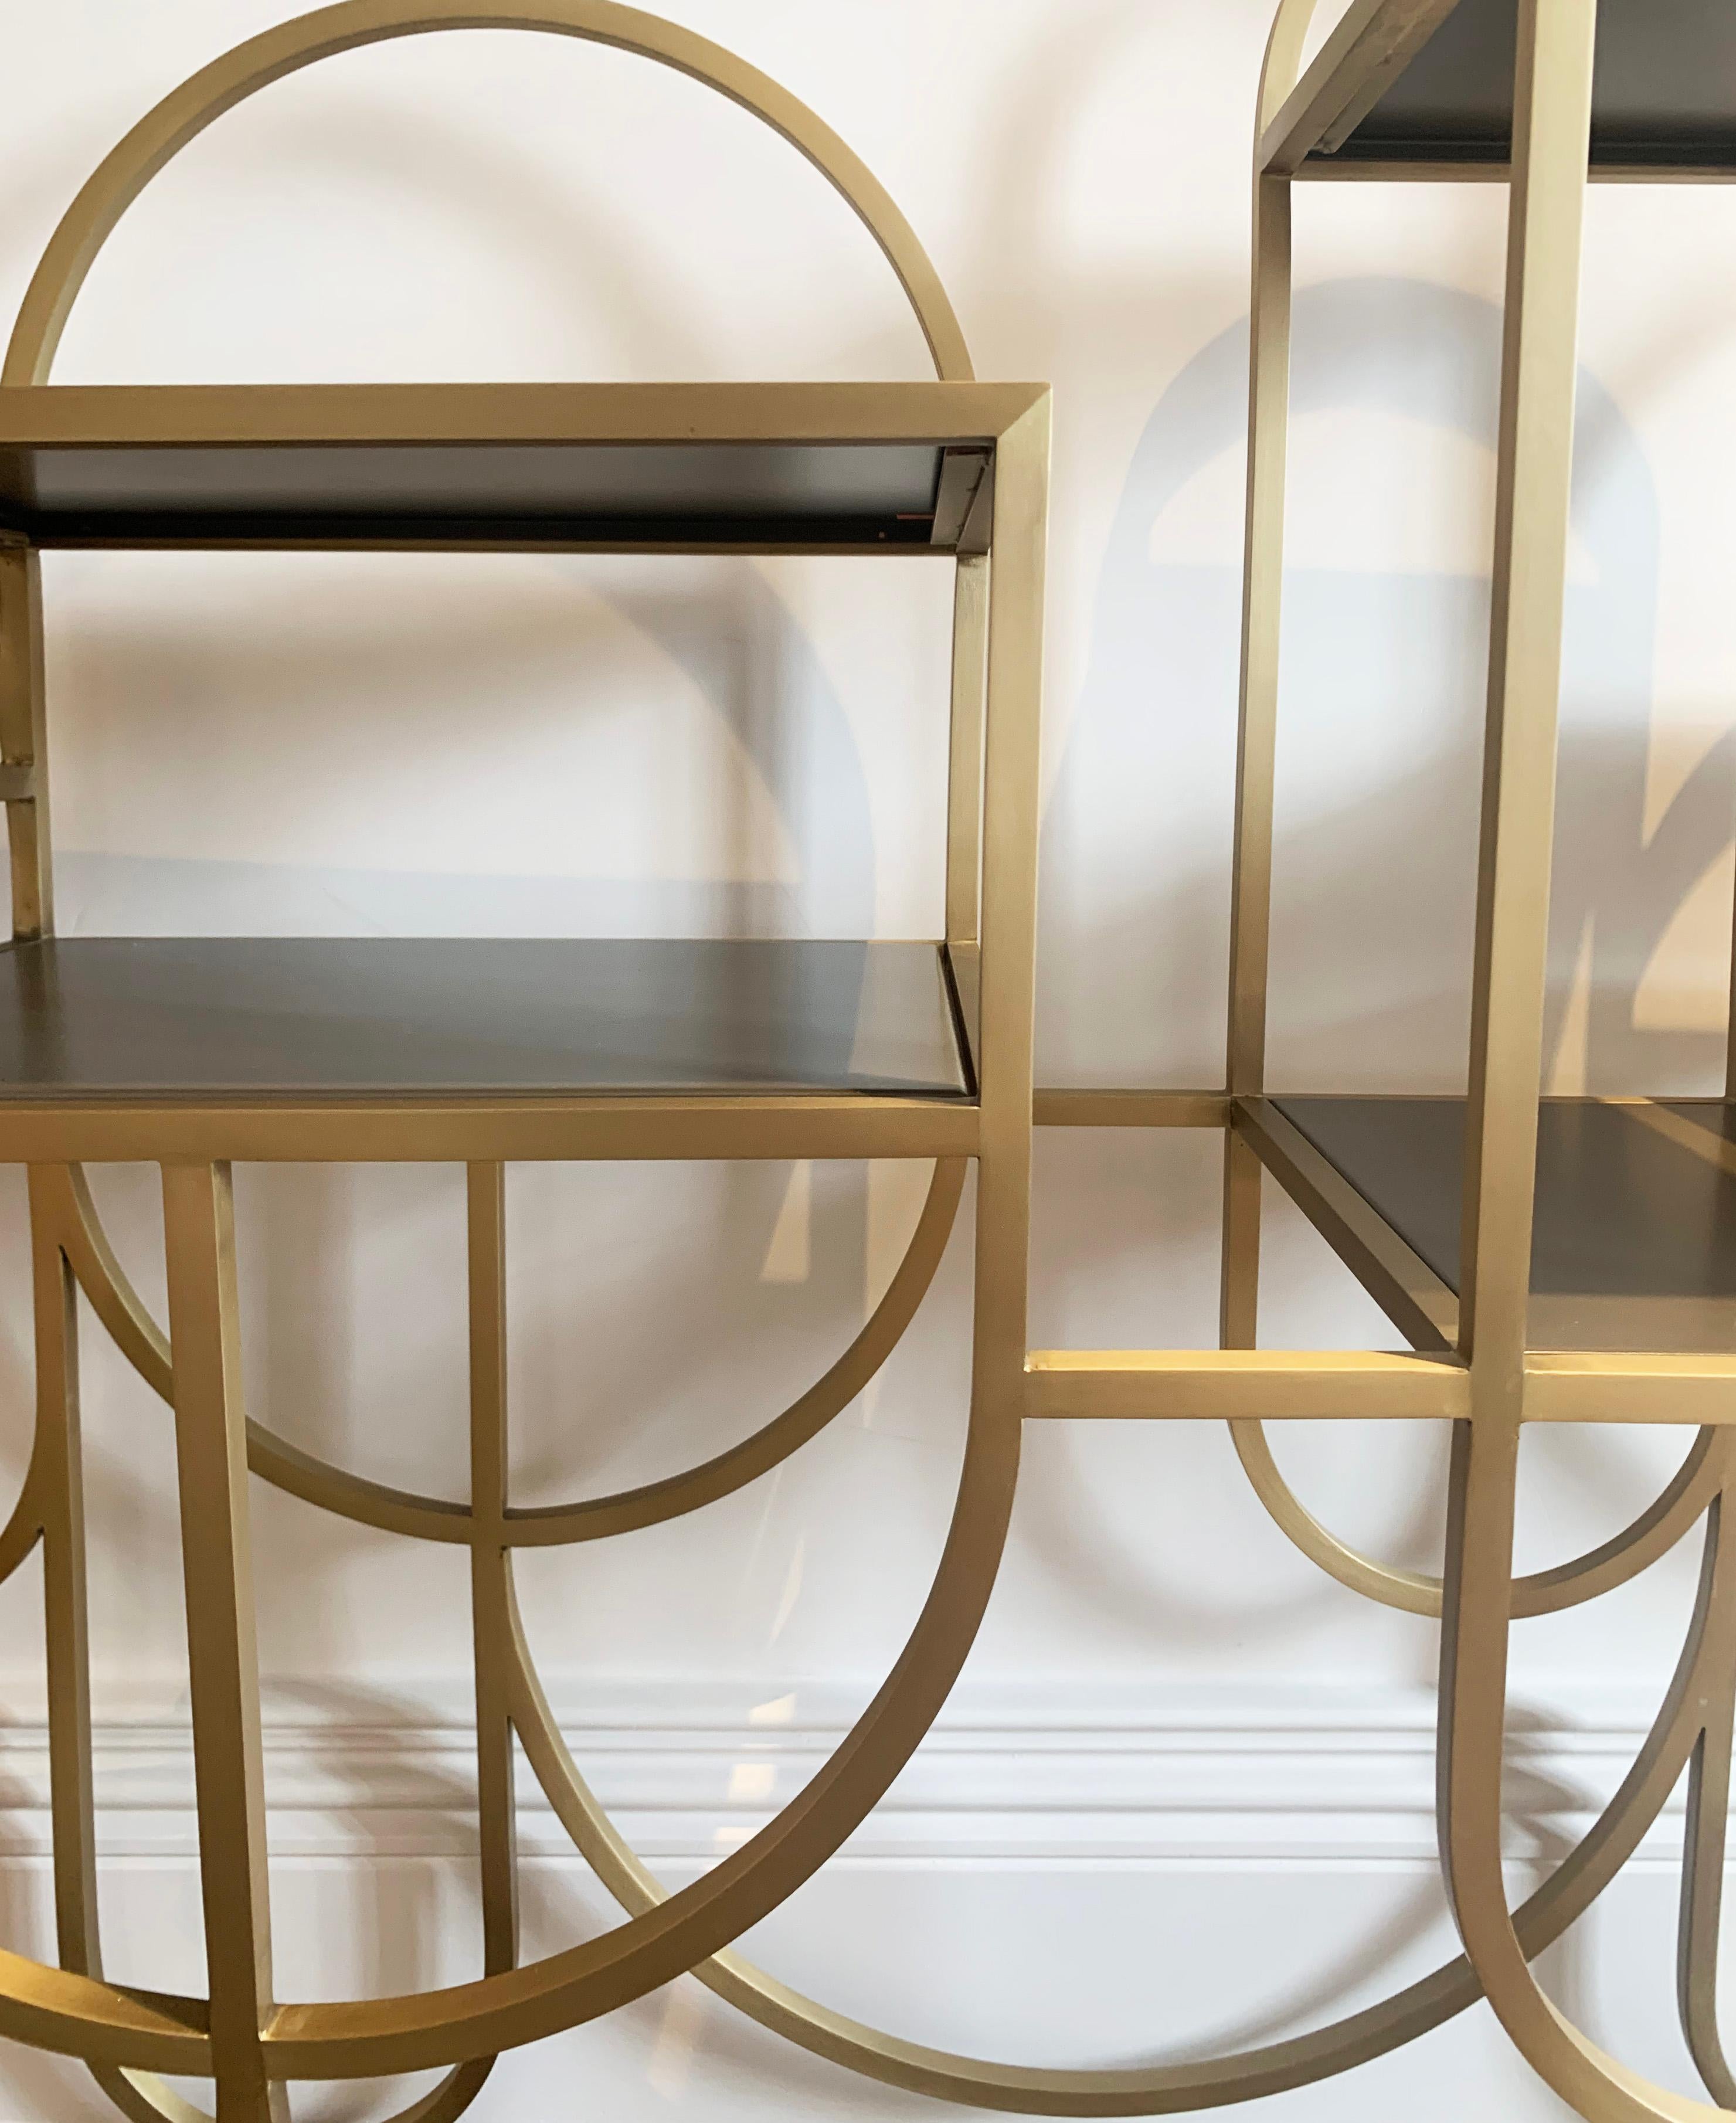 Aluminium Table console contemporaine - Finition métal doré - Style Bauhaus - LARA Bohinc